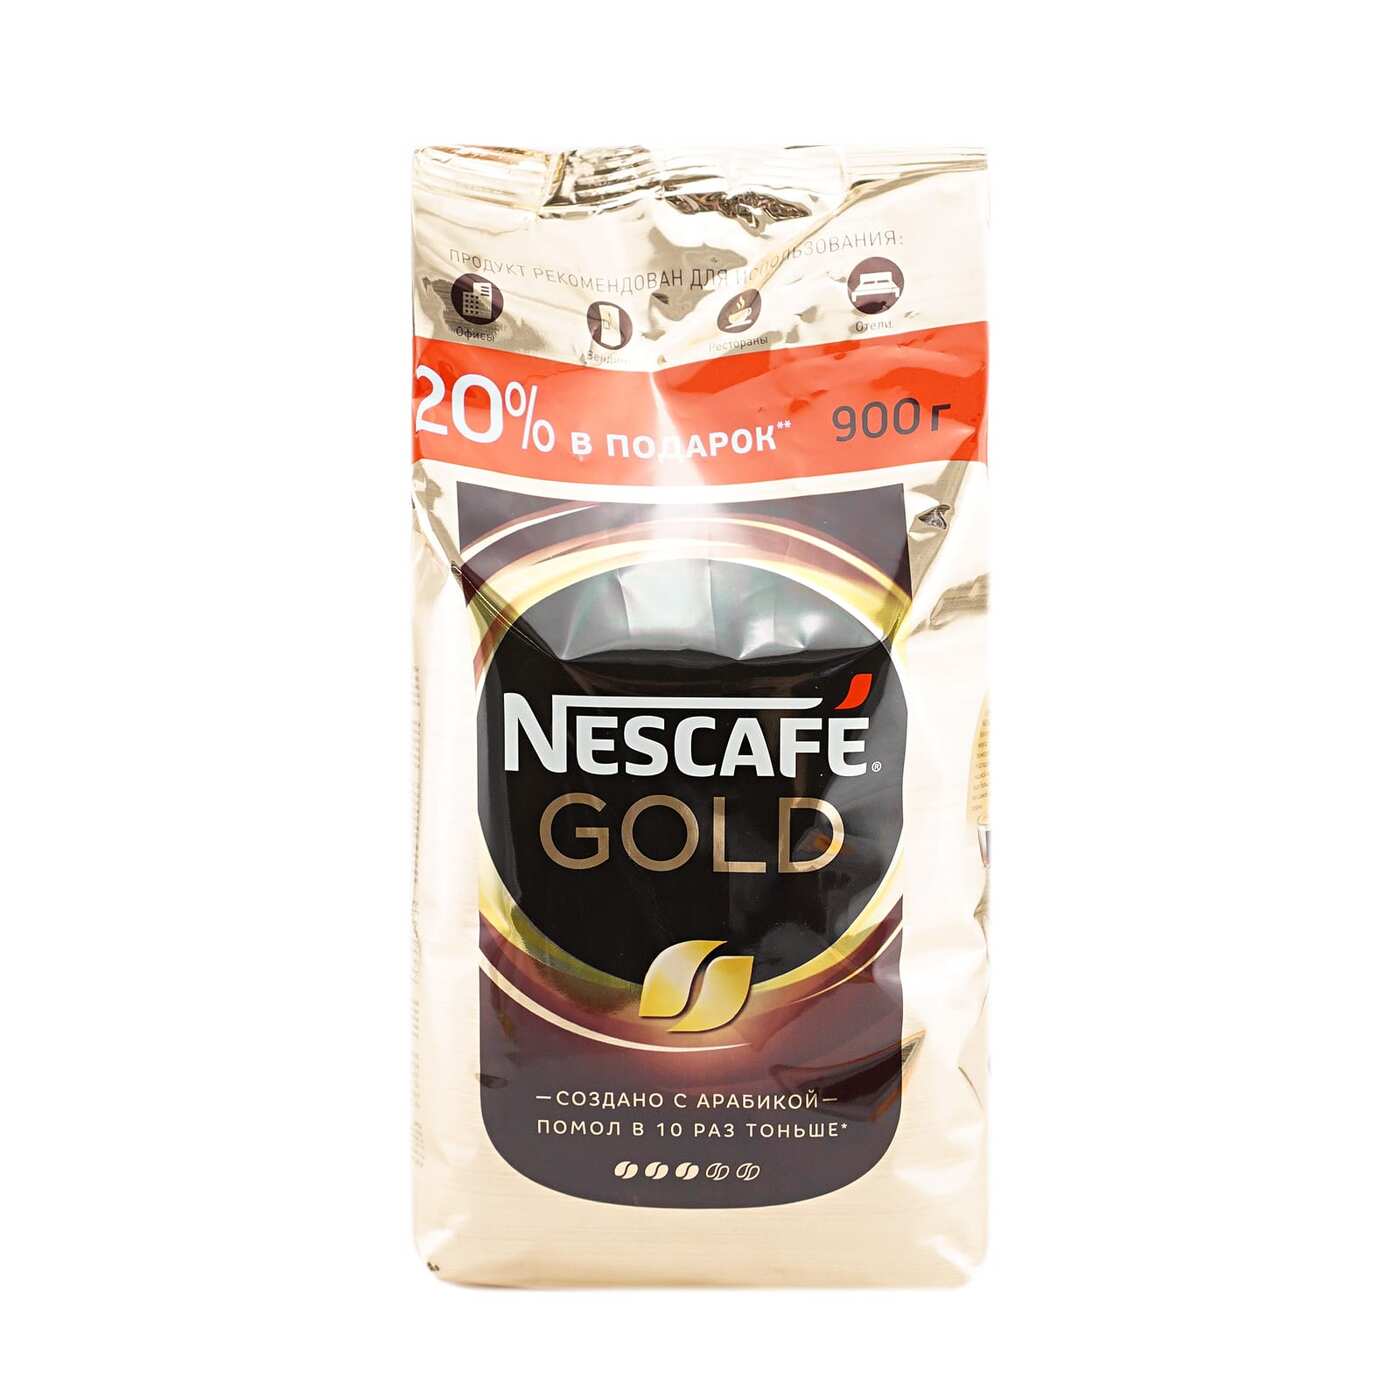 Nescafe gold растворимый 900. Nescafe кофе Gold 900г.. Nescafe Gold 750г. Кофе Нескафе Голд 750г. Кофе растворимый Nescafe Gold натуральный сублимированный, 900г.